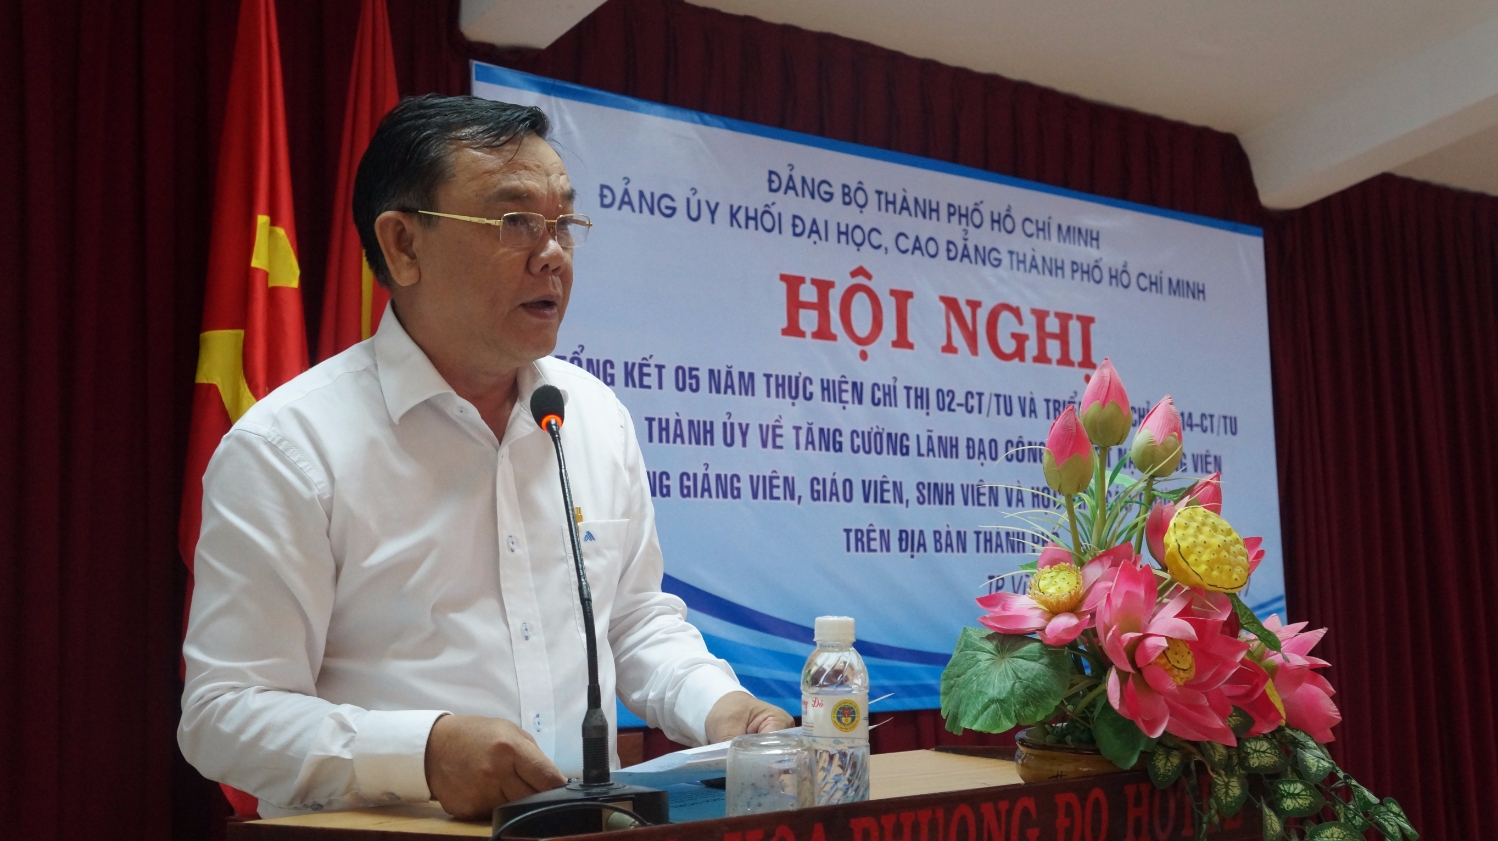 Hinh 4, đồng chi Nguyễn Đông Phong phát biểu